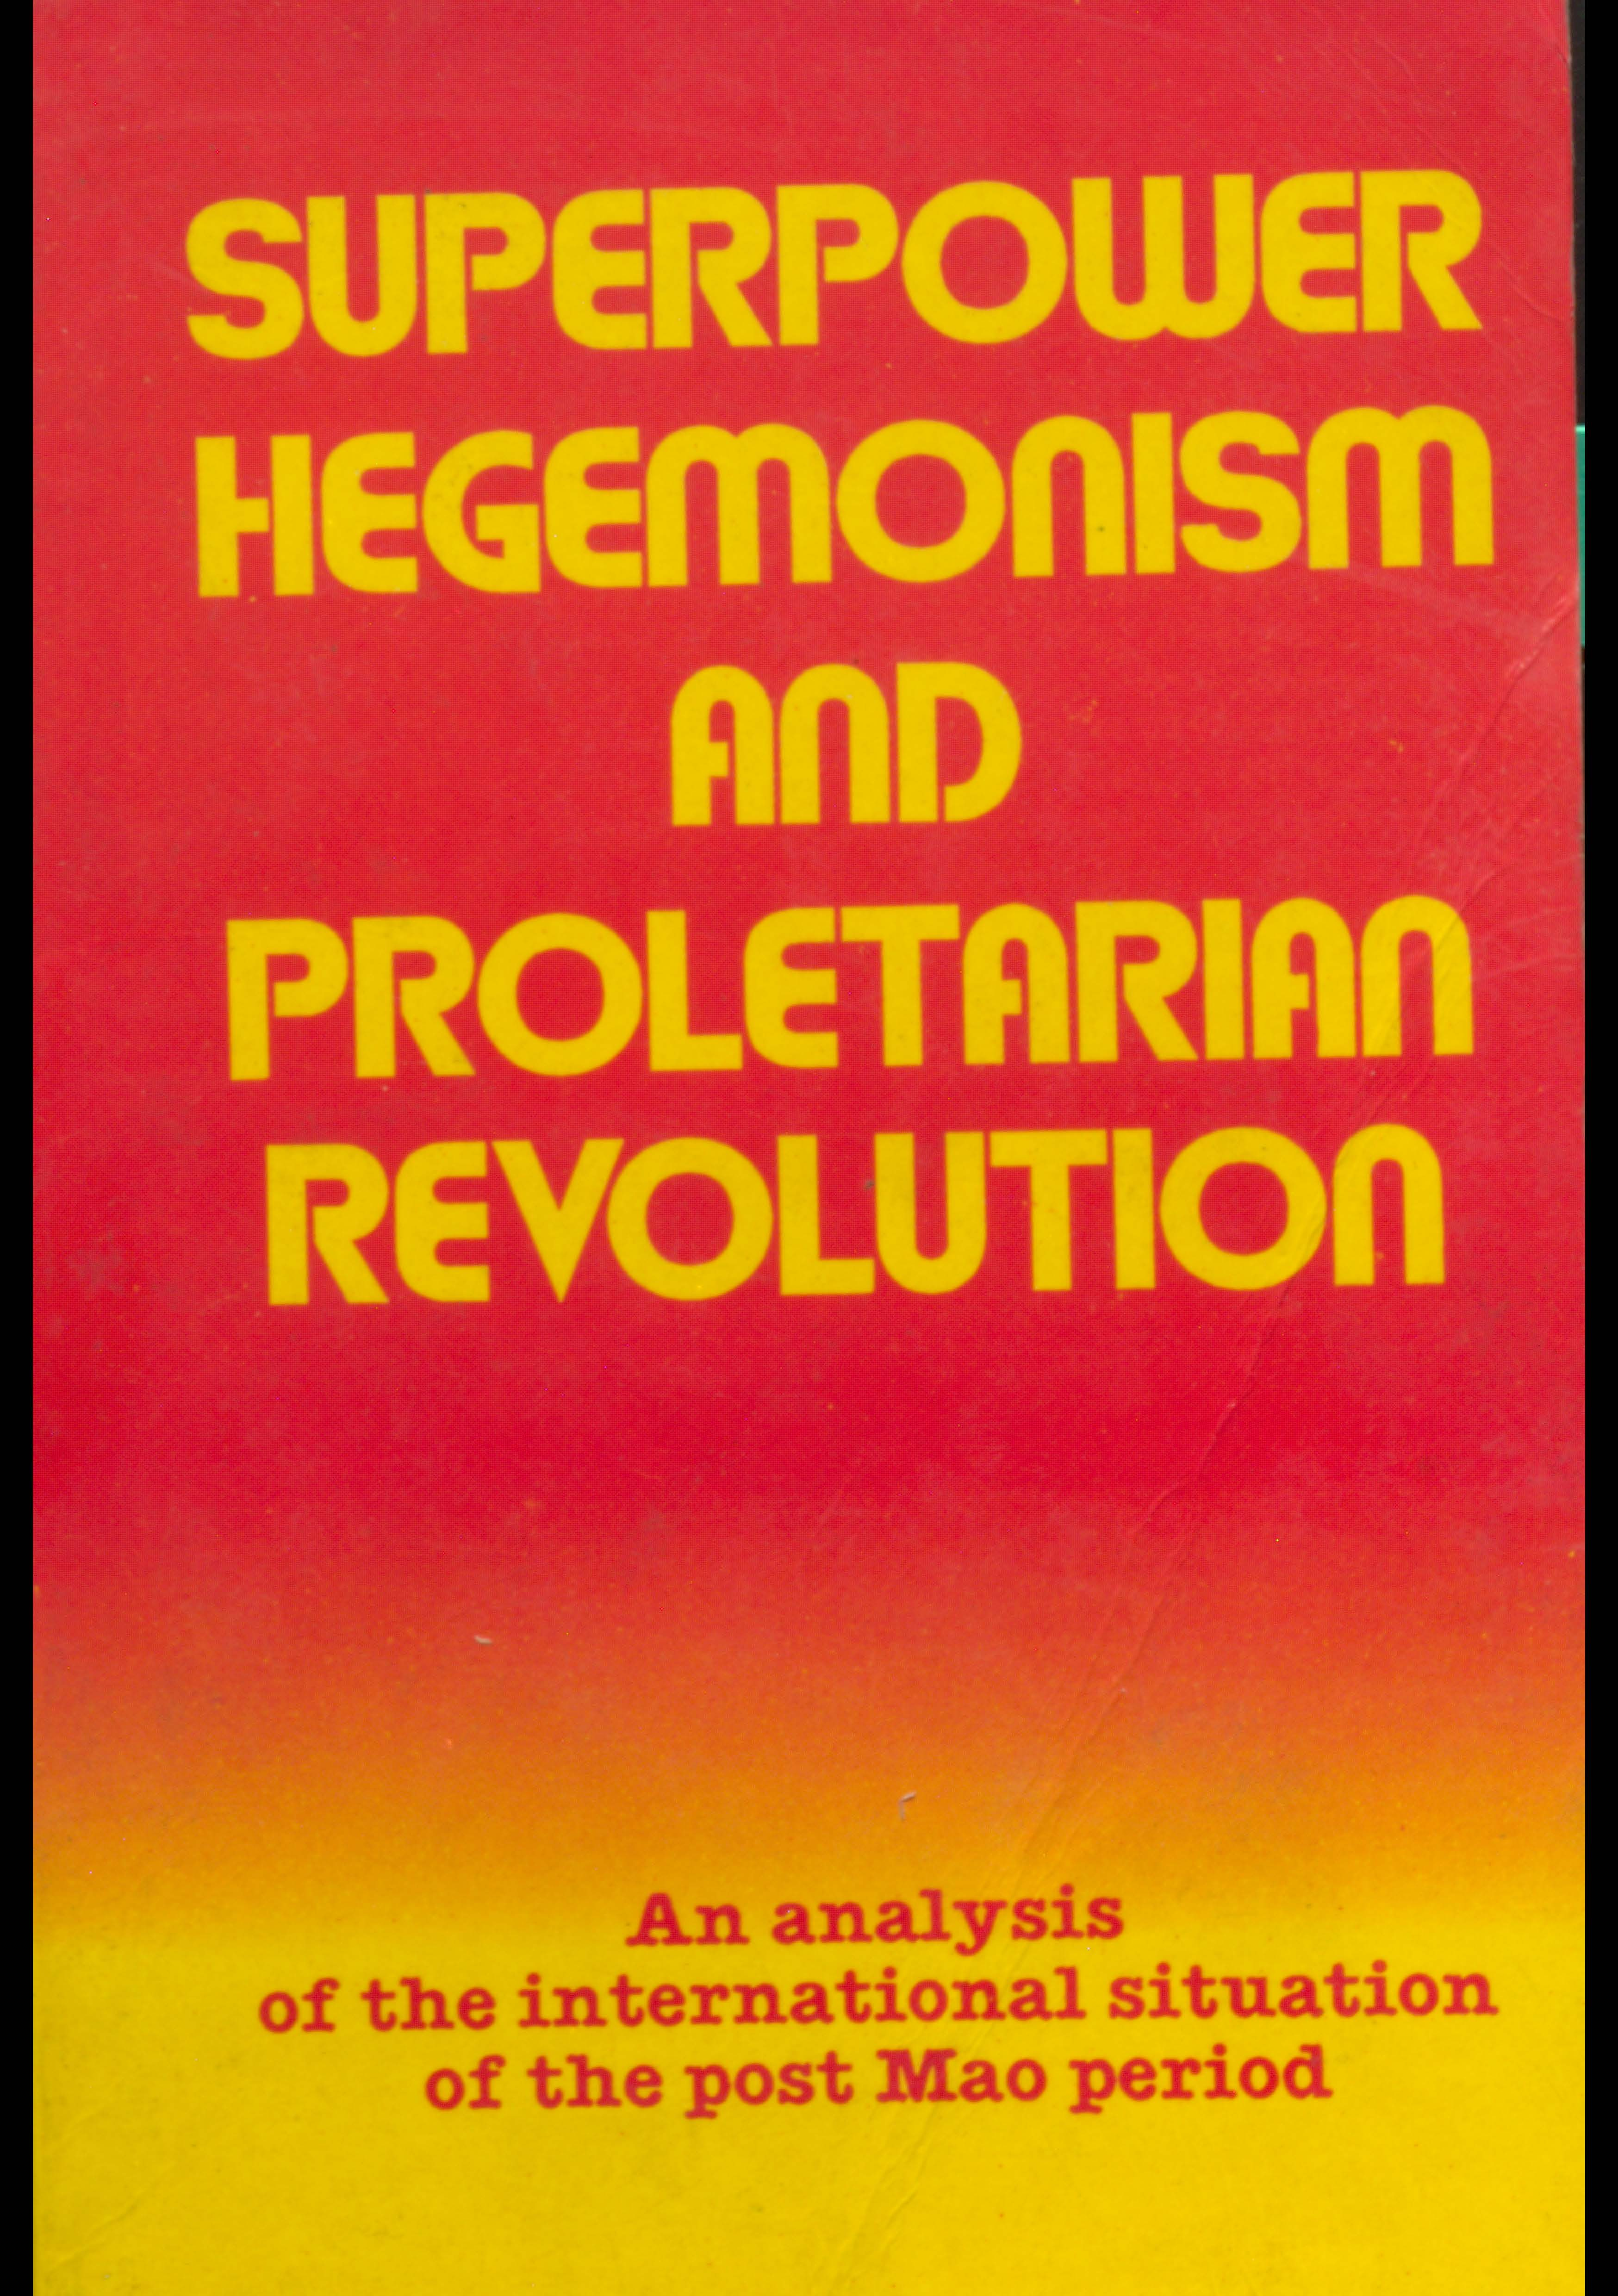 Superpower hegemonism and proletarian revolution